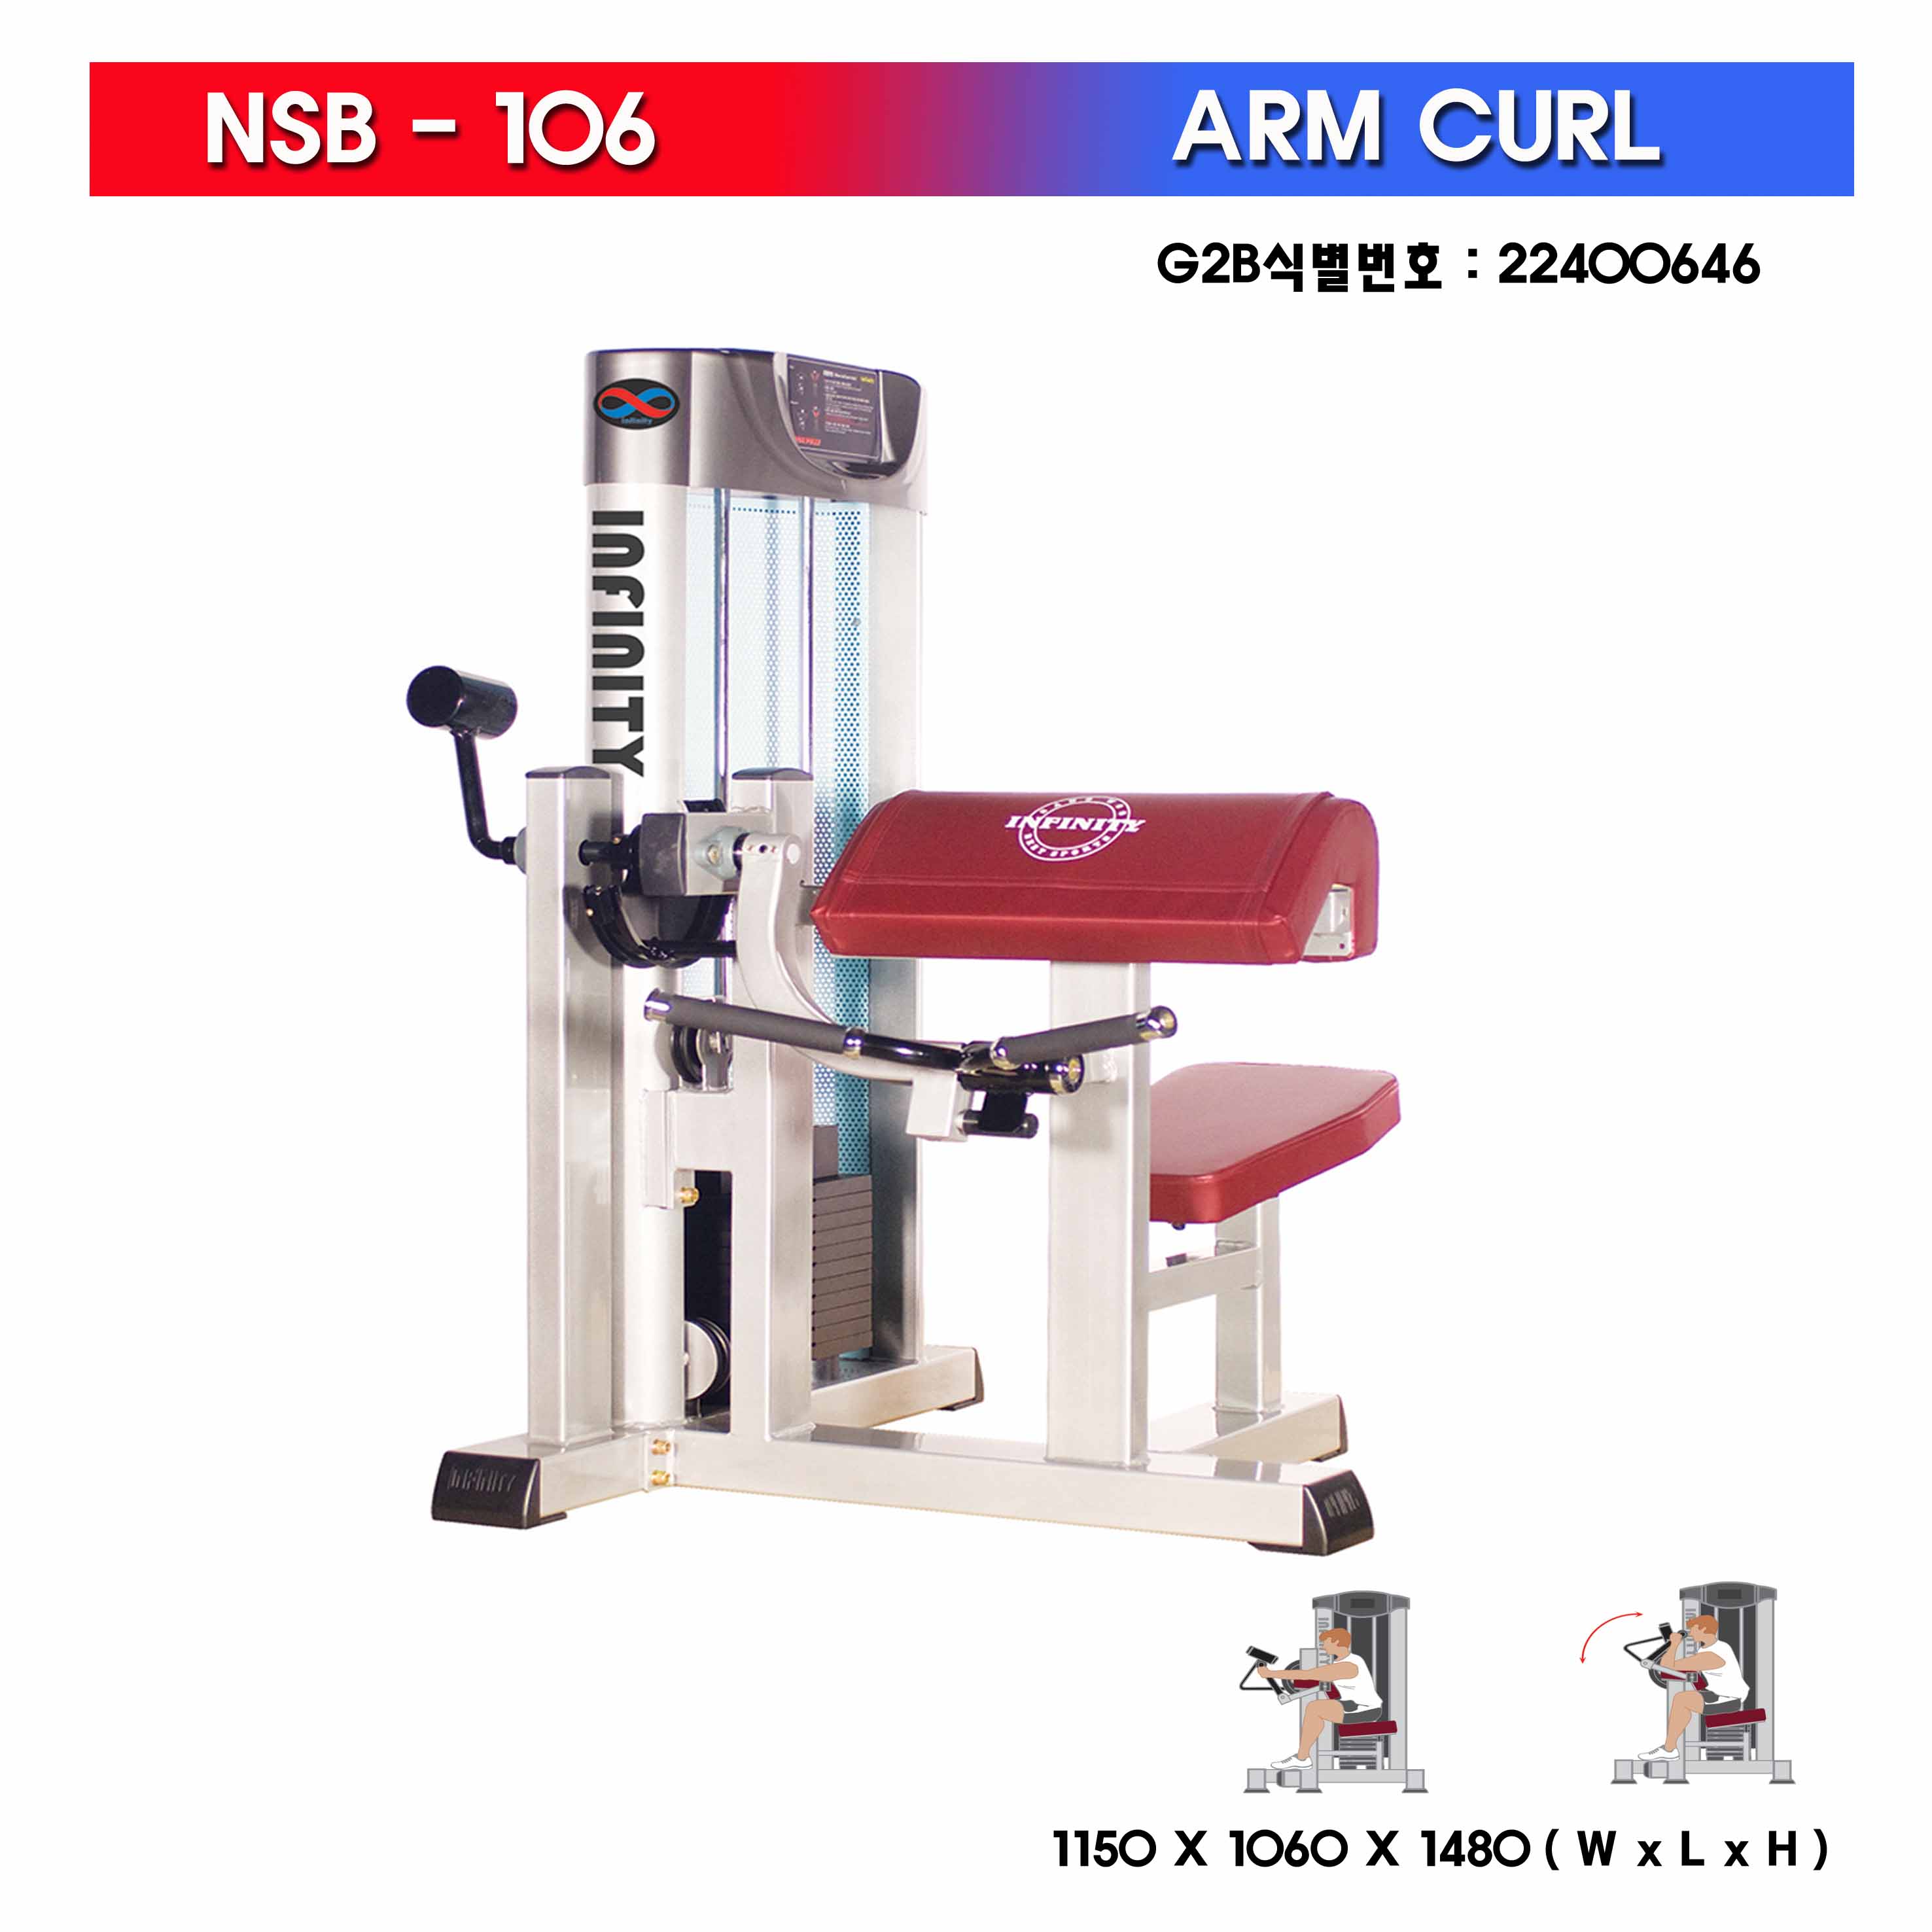 ARM CURL